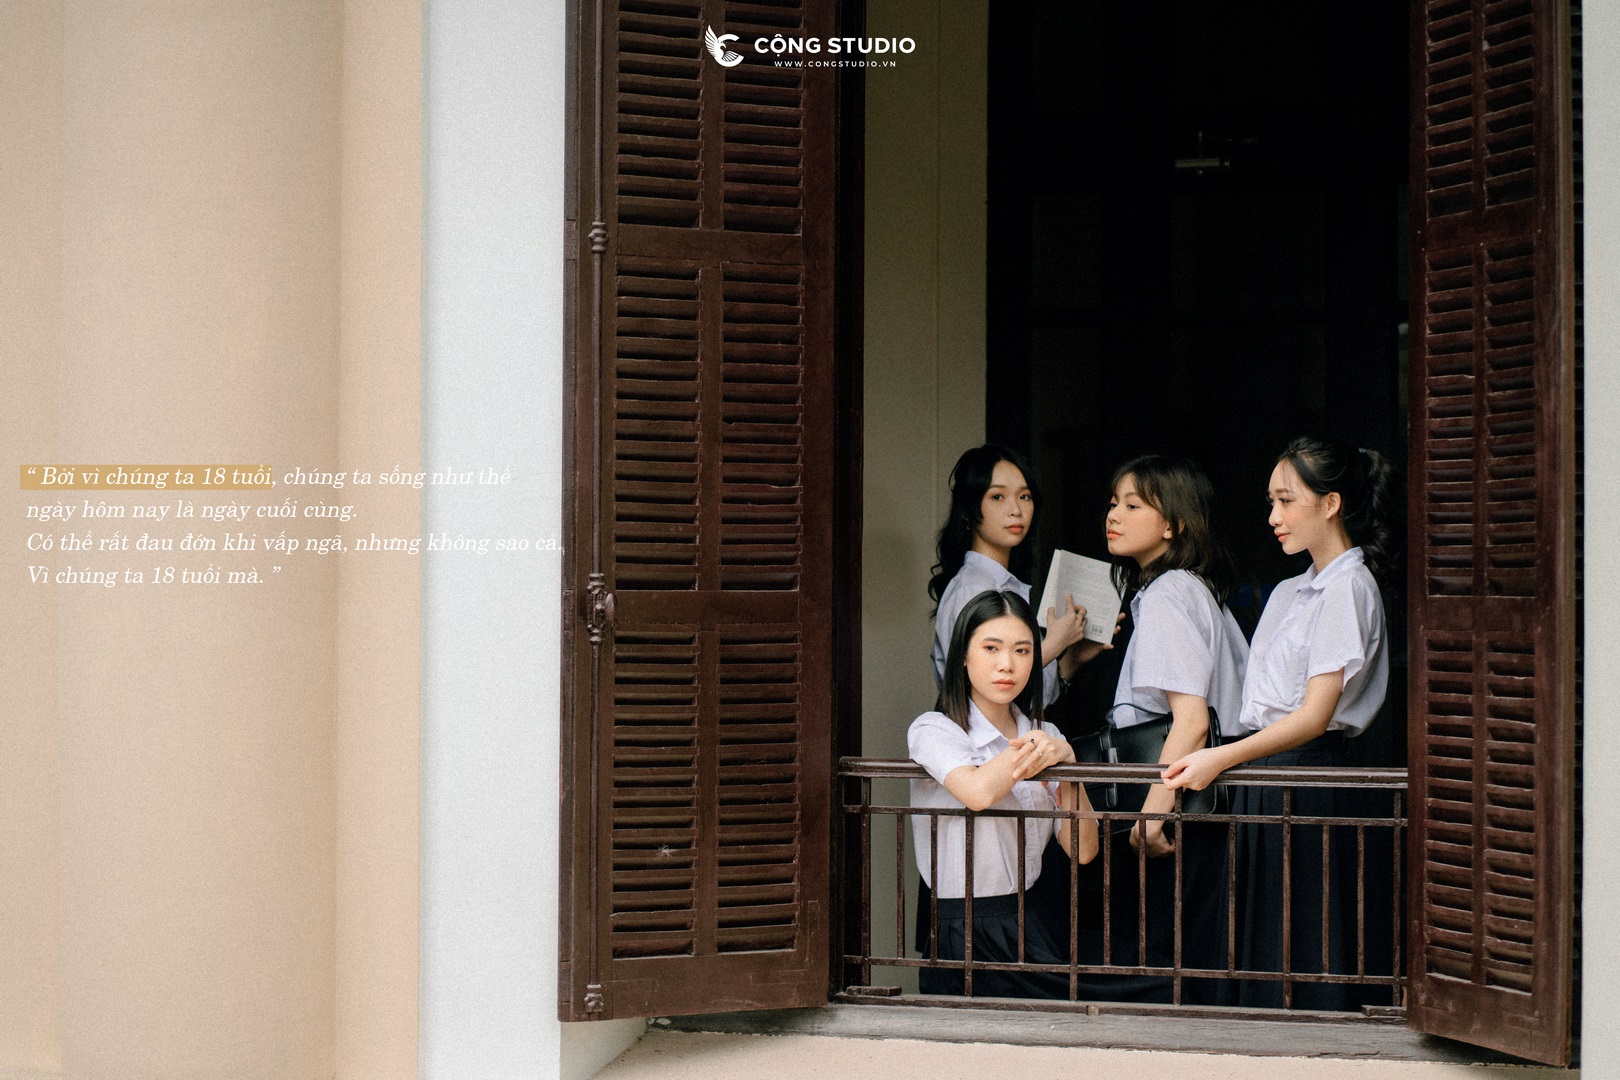 Chụp ảnh kỷ yếu tại Hồ Chí Minh